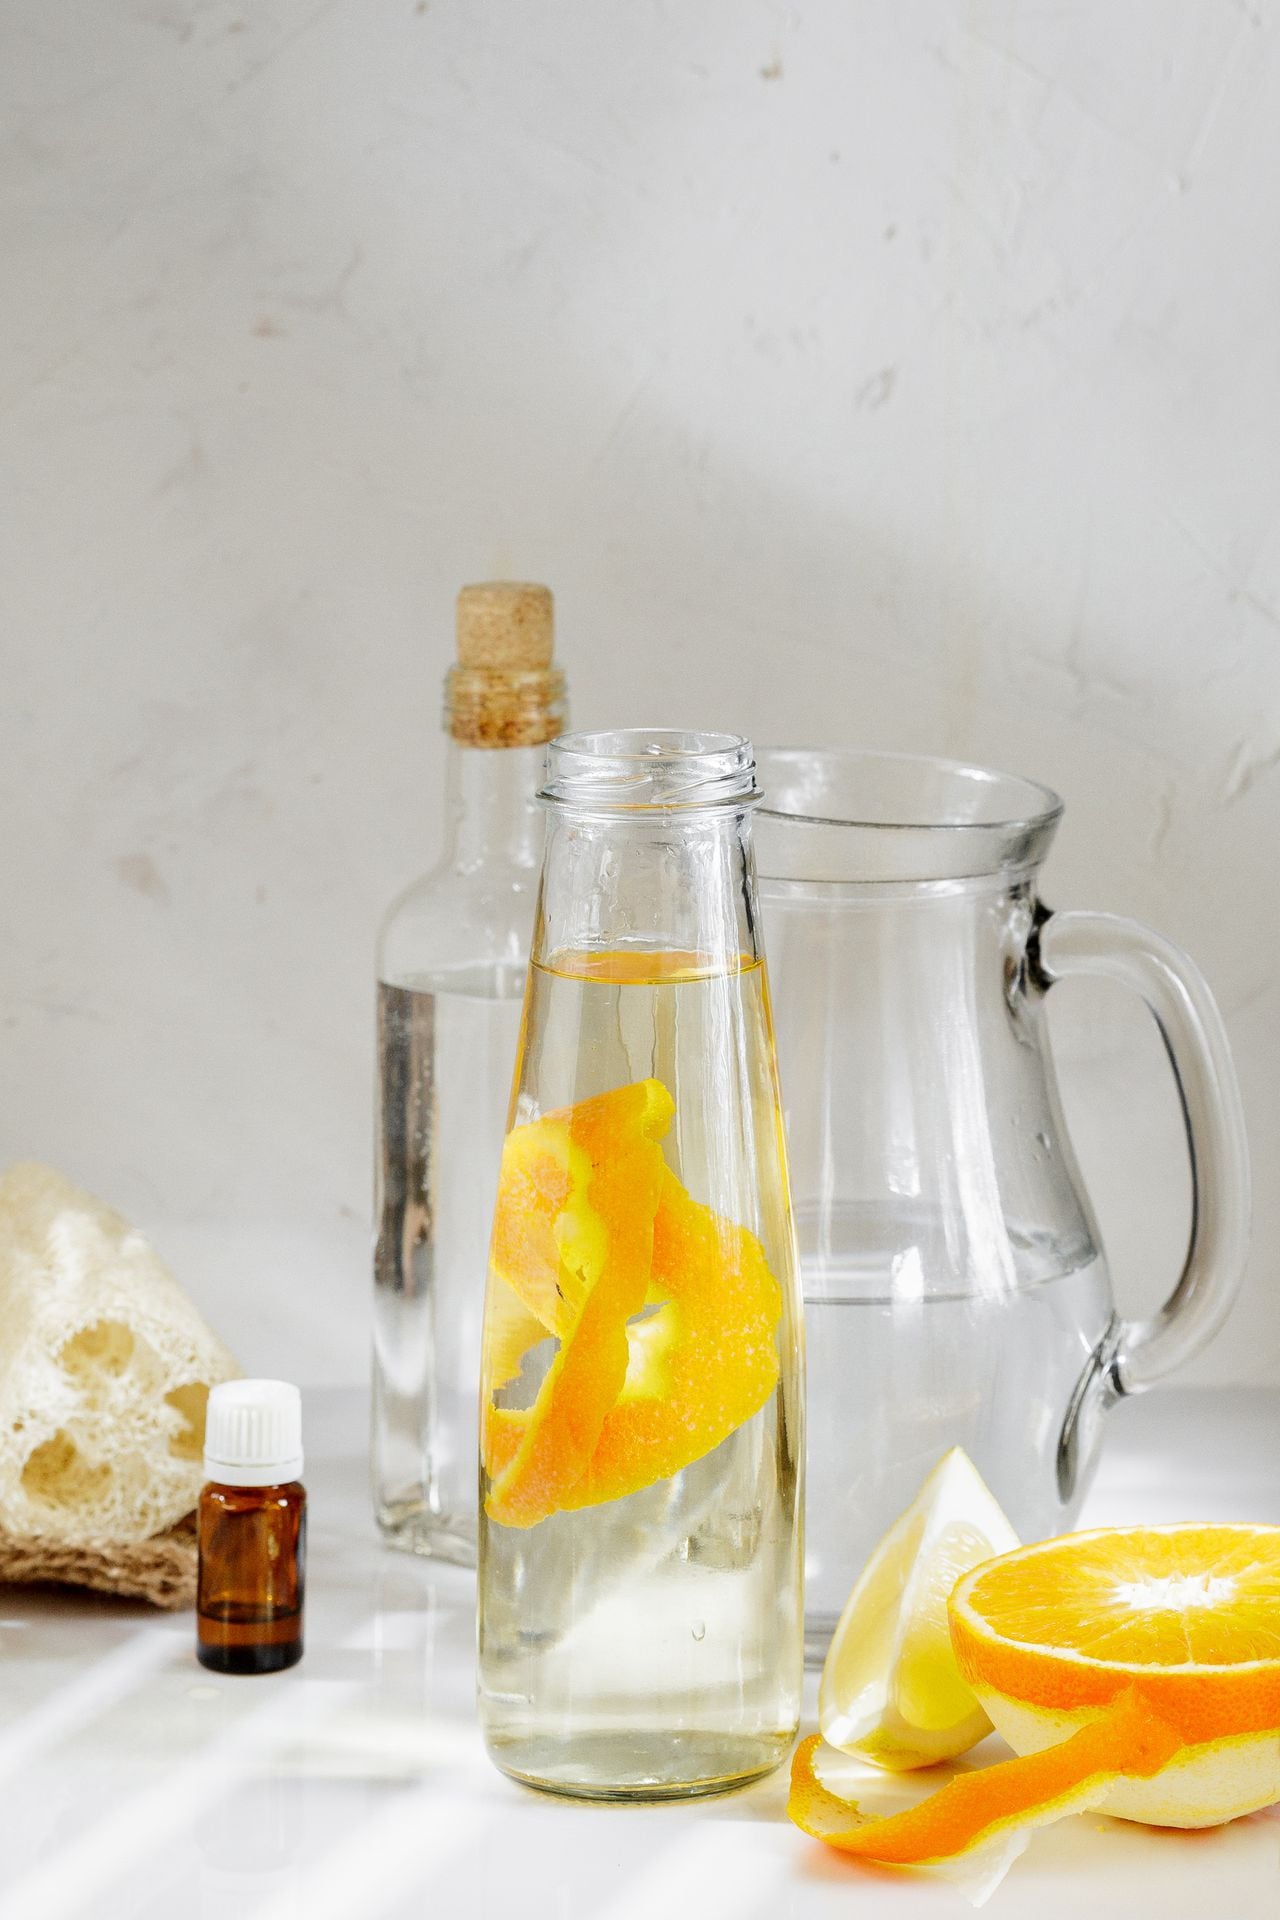 El té de cáscara de naranja ayuda a reducir el colesterol en la sangre por la presencia de flavonoides y antioxidantes que mantendrán las arterias limpias.